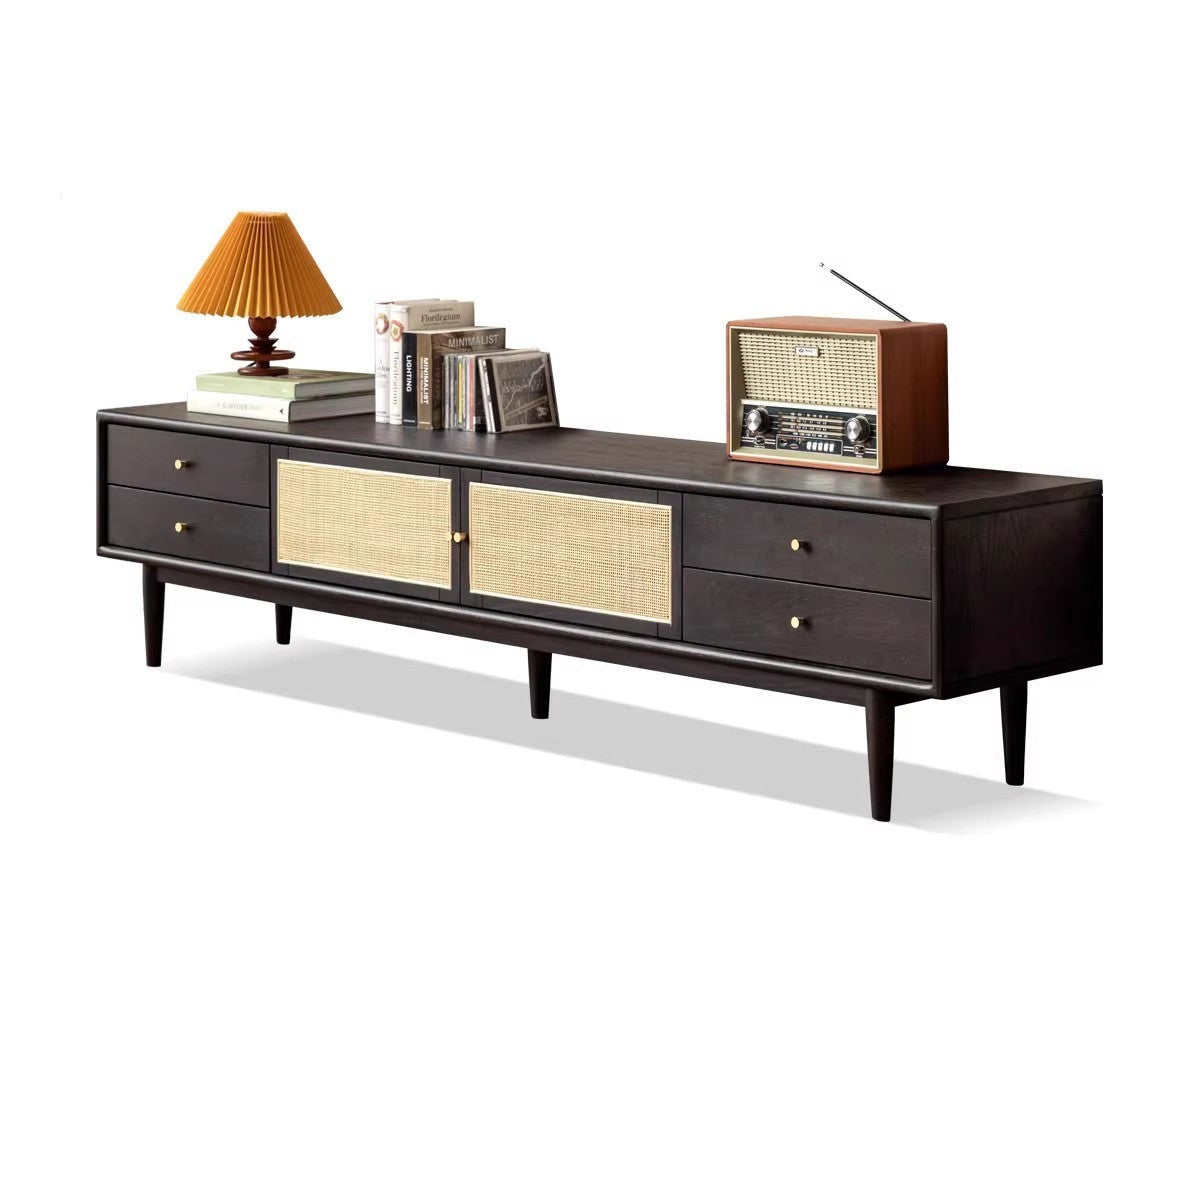 Rattan Oak solid wood TV cabinet black modern minimalist